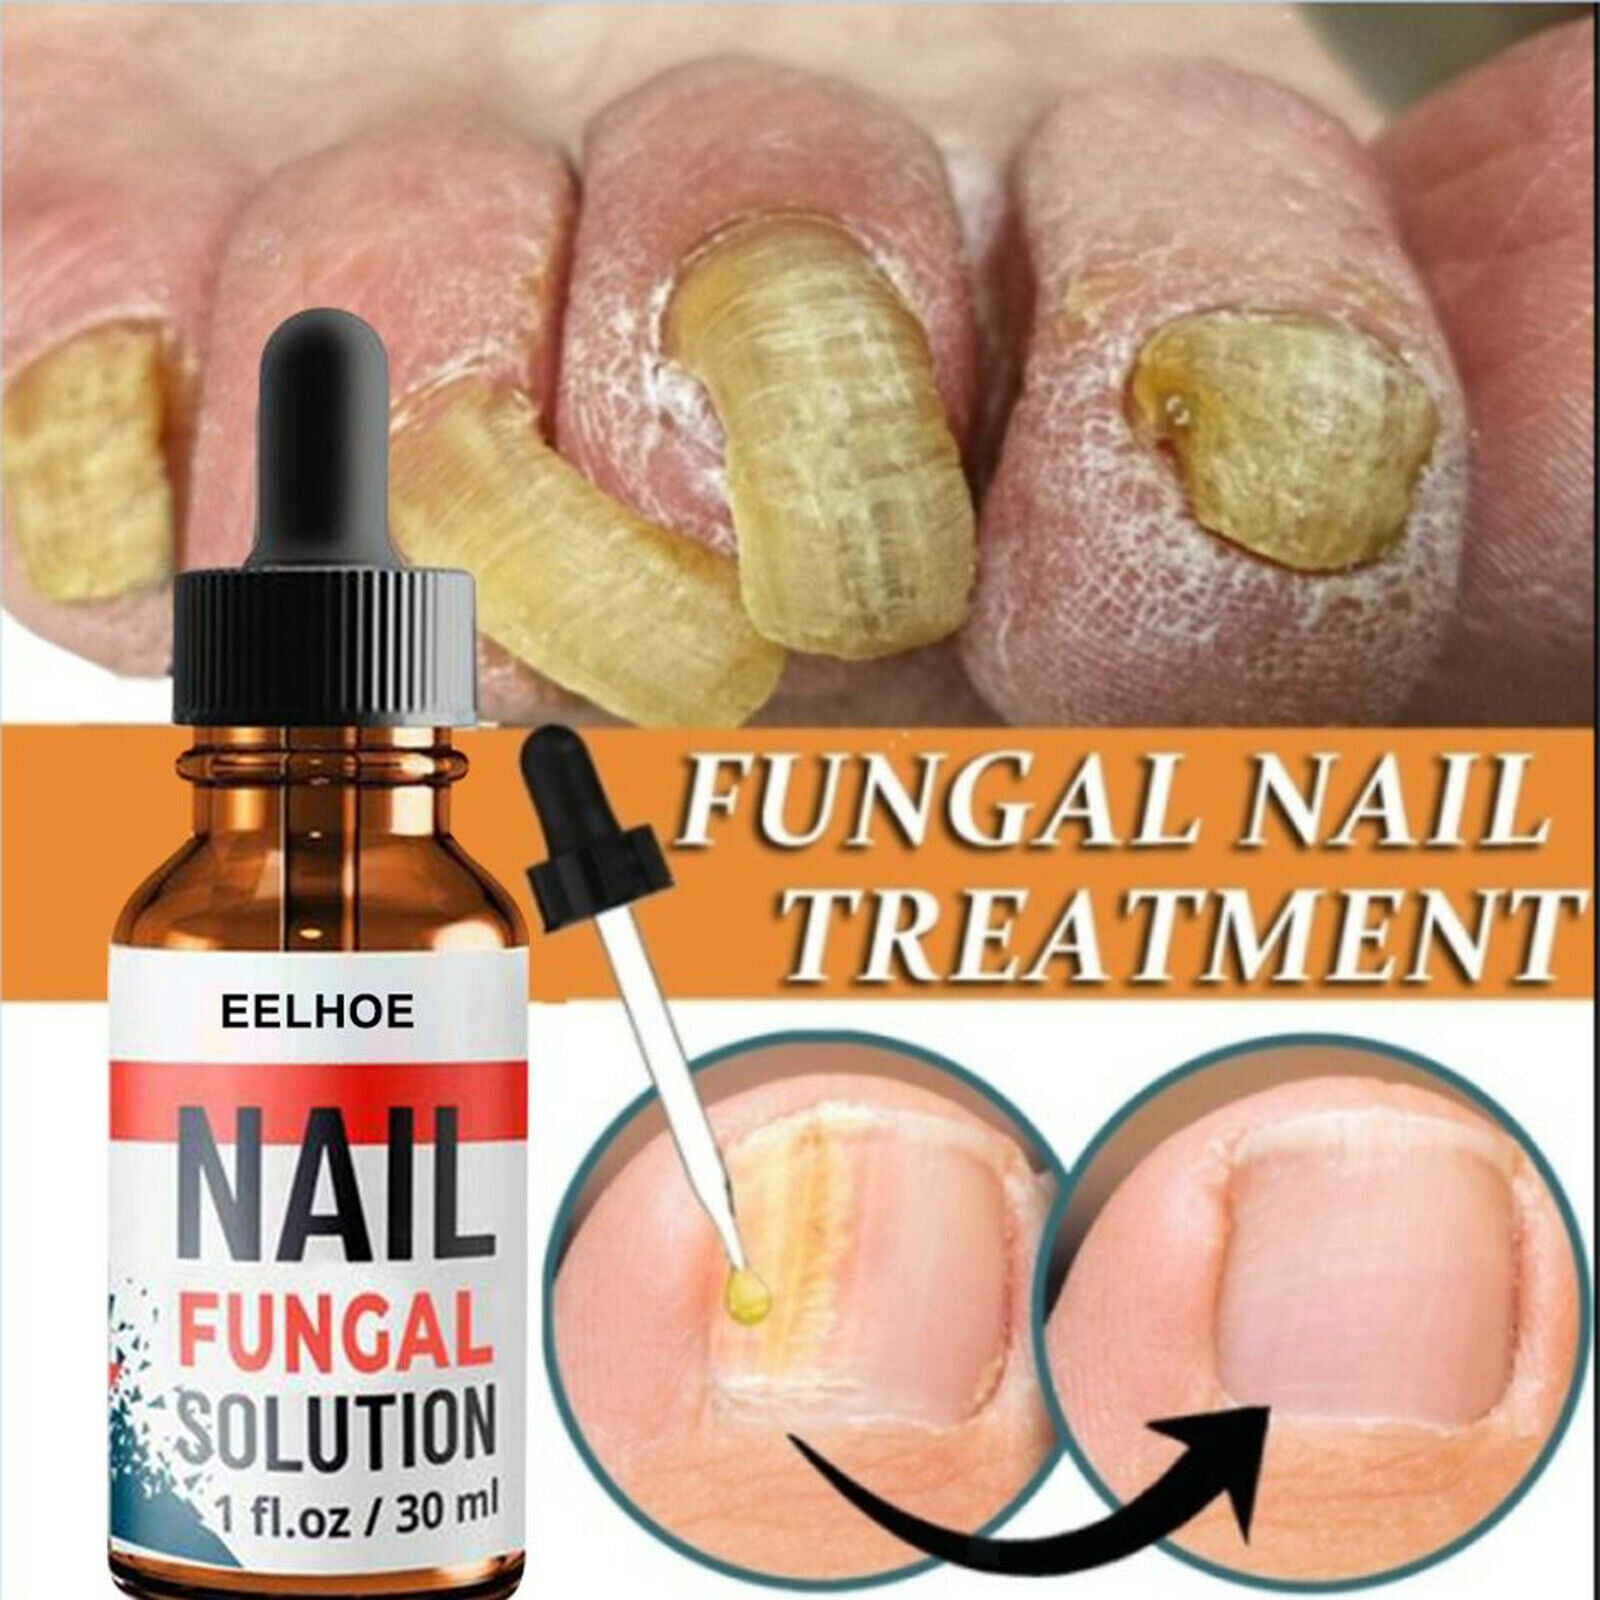 2x 1.02OZ Fungal Nail Treatment Repair Damaged Brittle Nail Paronychia